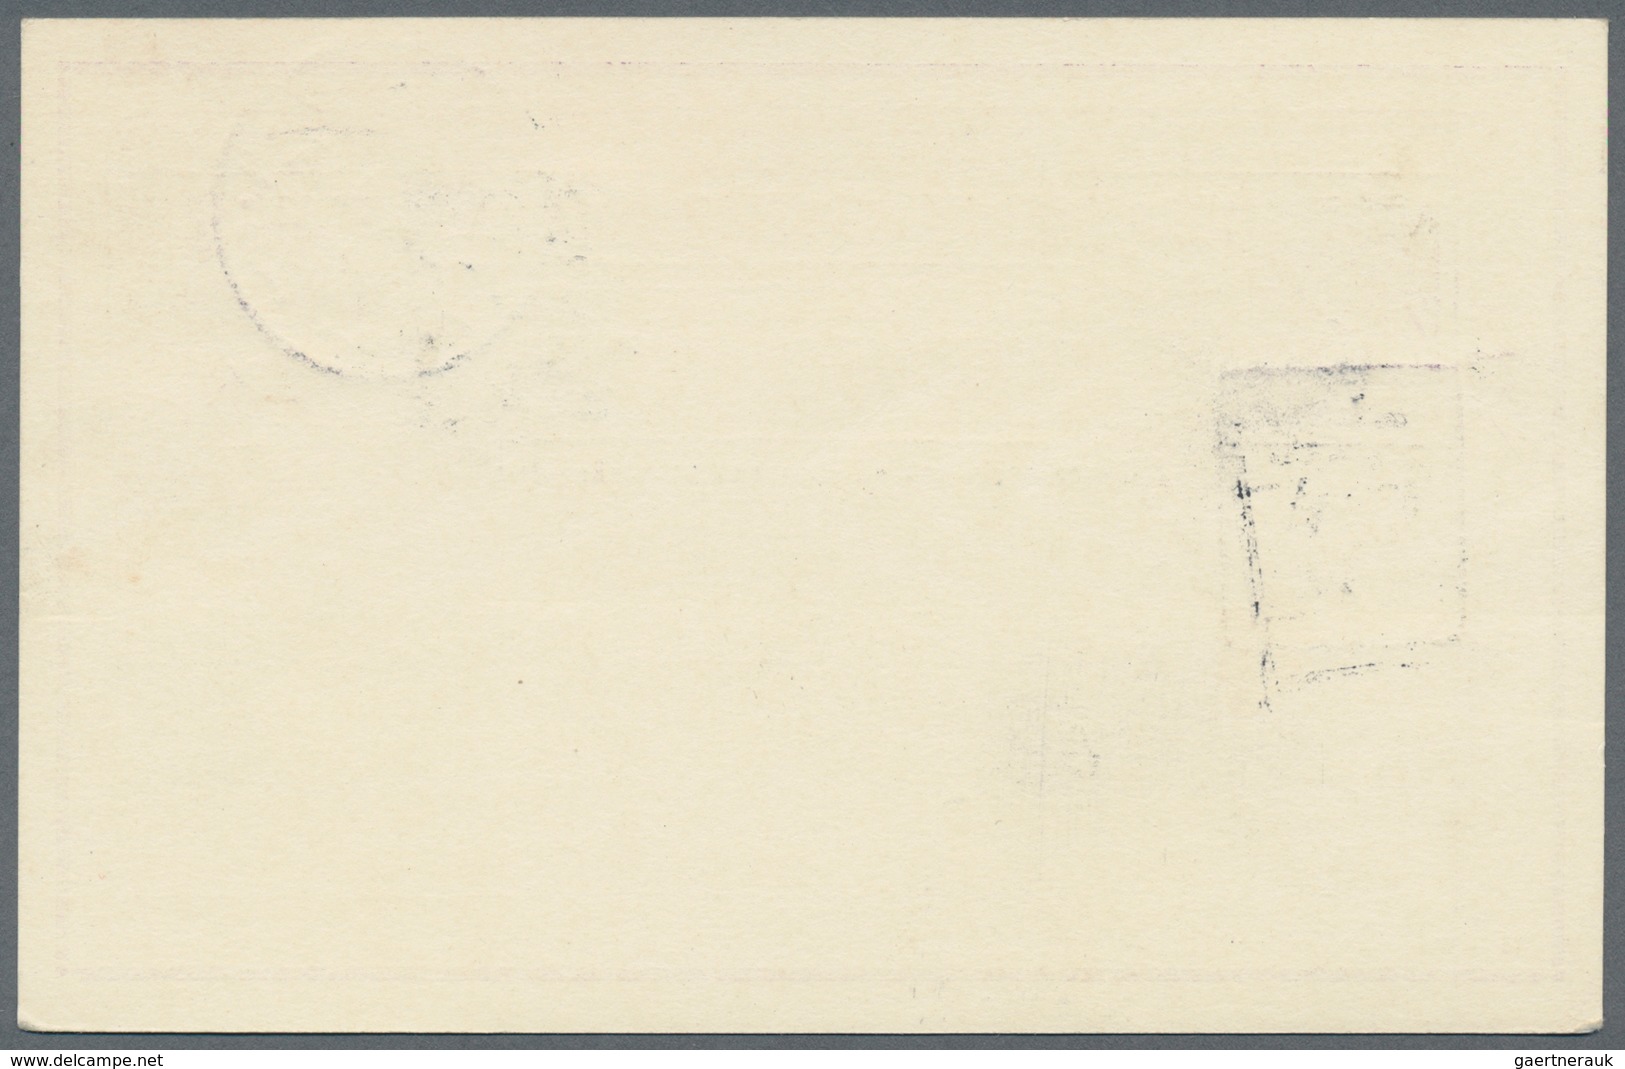 Island - Ganzsachen: 1924, 15 Aur Stationery Card Uprated With 40 Aur Christian X. Sent Registered W - Postwaardestukken